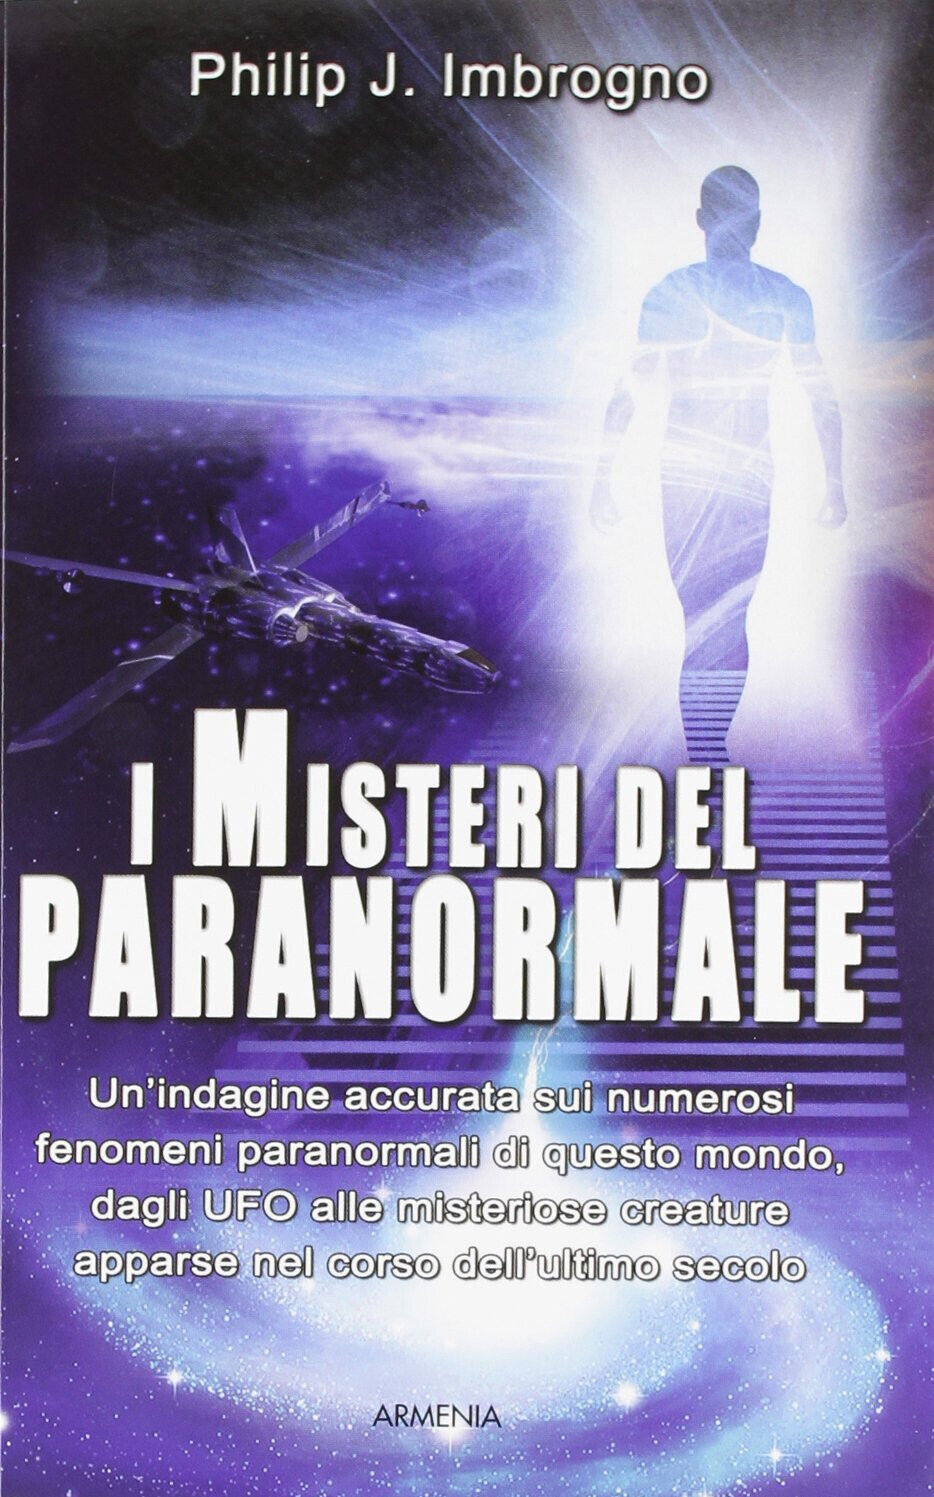 I misteri del paranormale - Philip J. Imbrogno - Armenia, 2012 libro usato